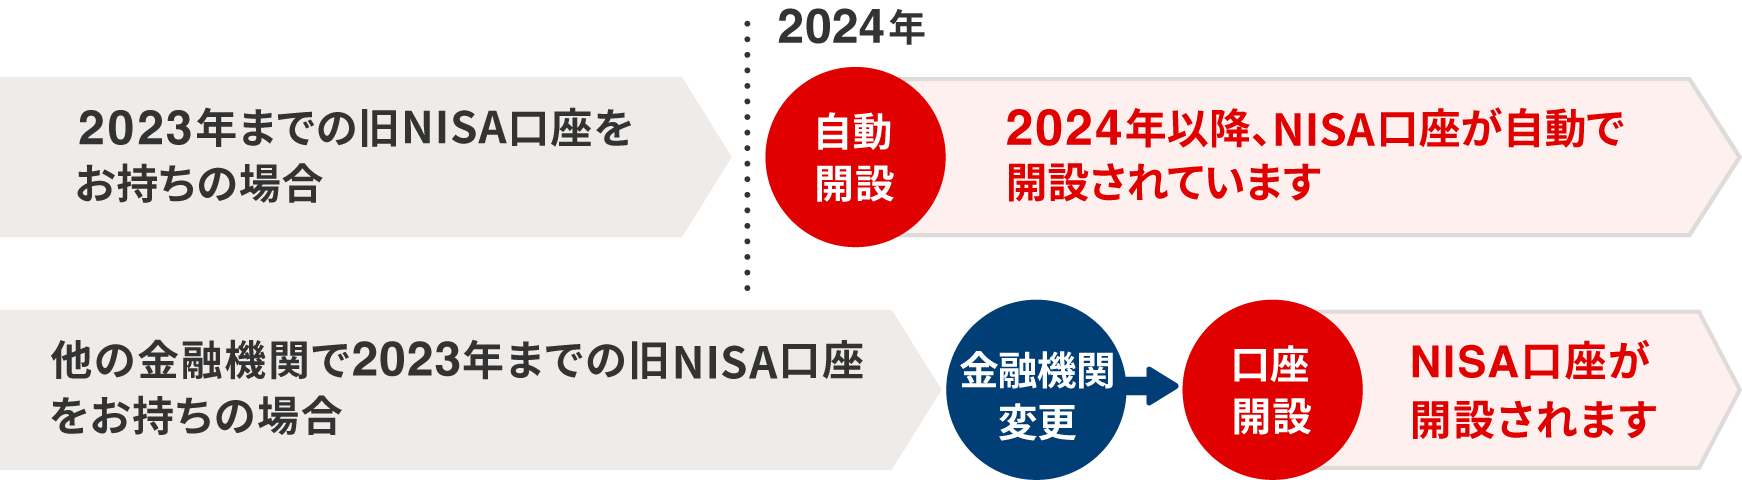 2023年までの旧NISA口座をお持ちの場合・他社にNISA口座をお持ちの場合の口座開設のイメージ